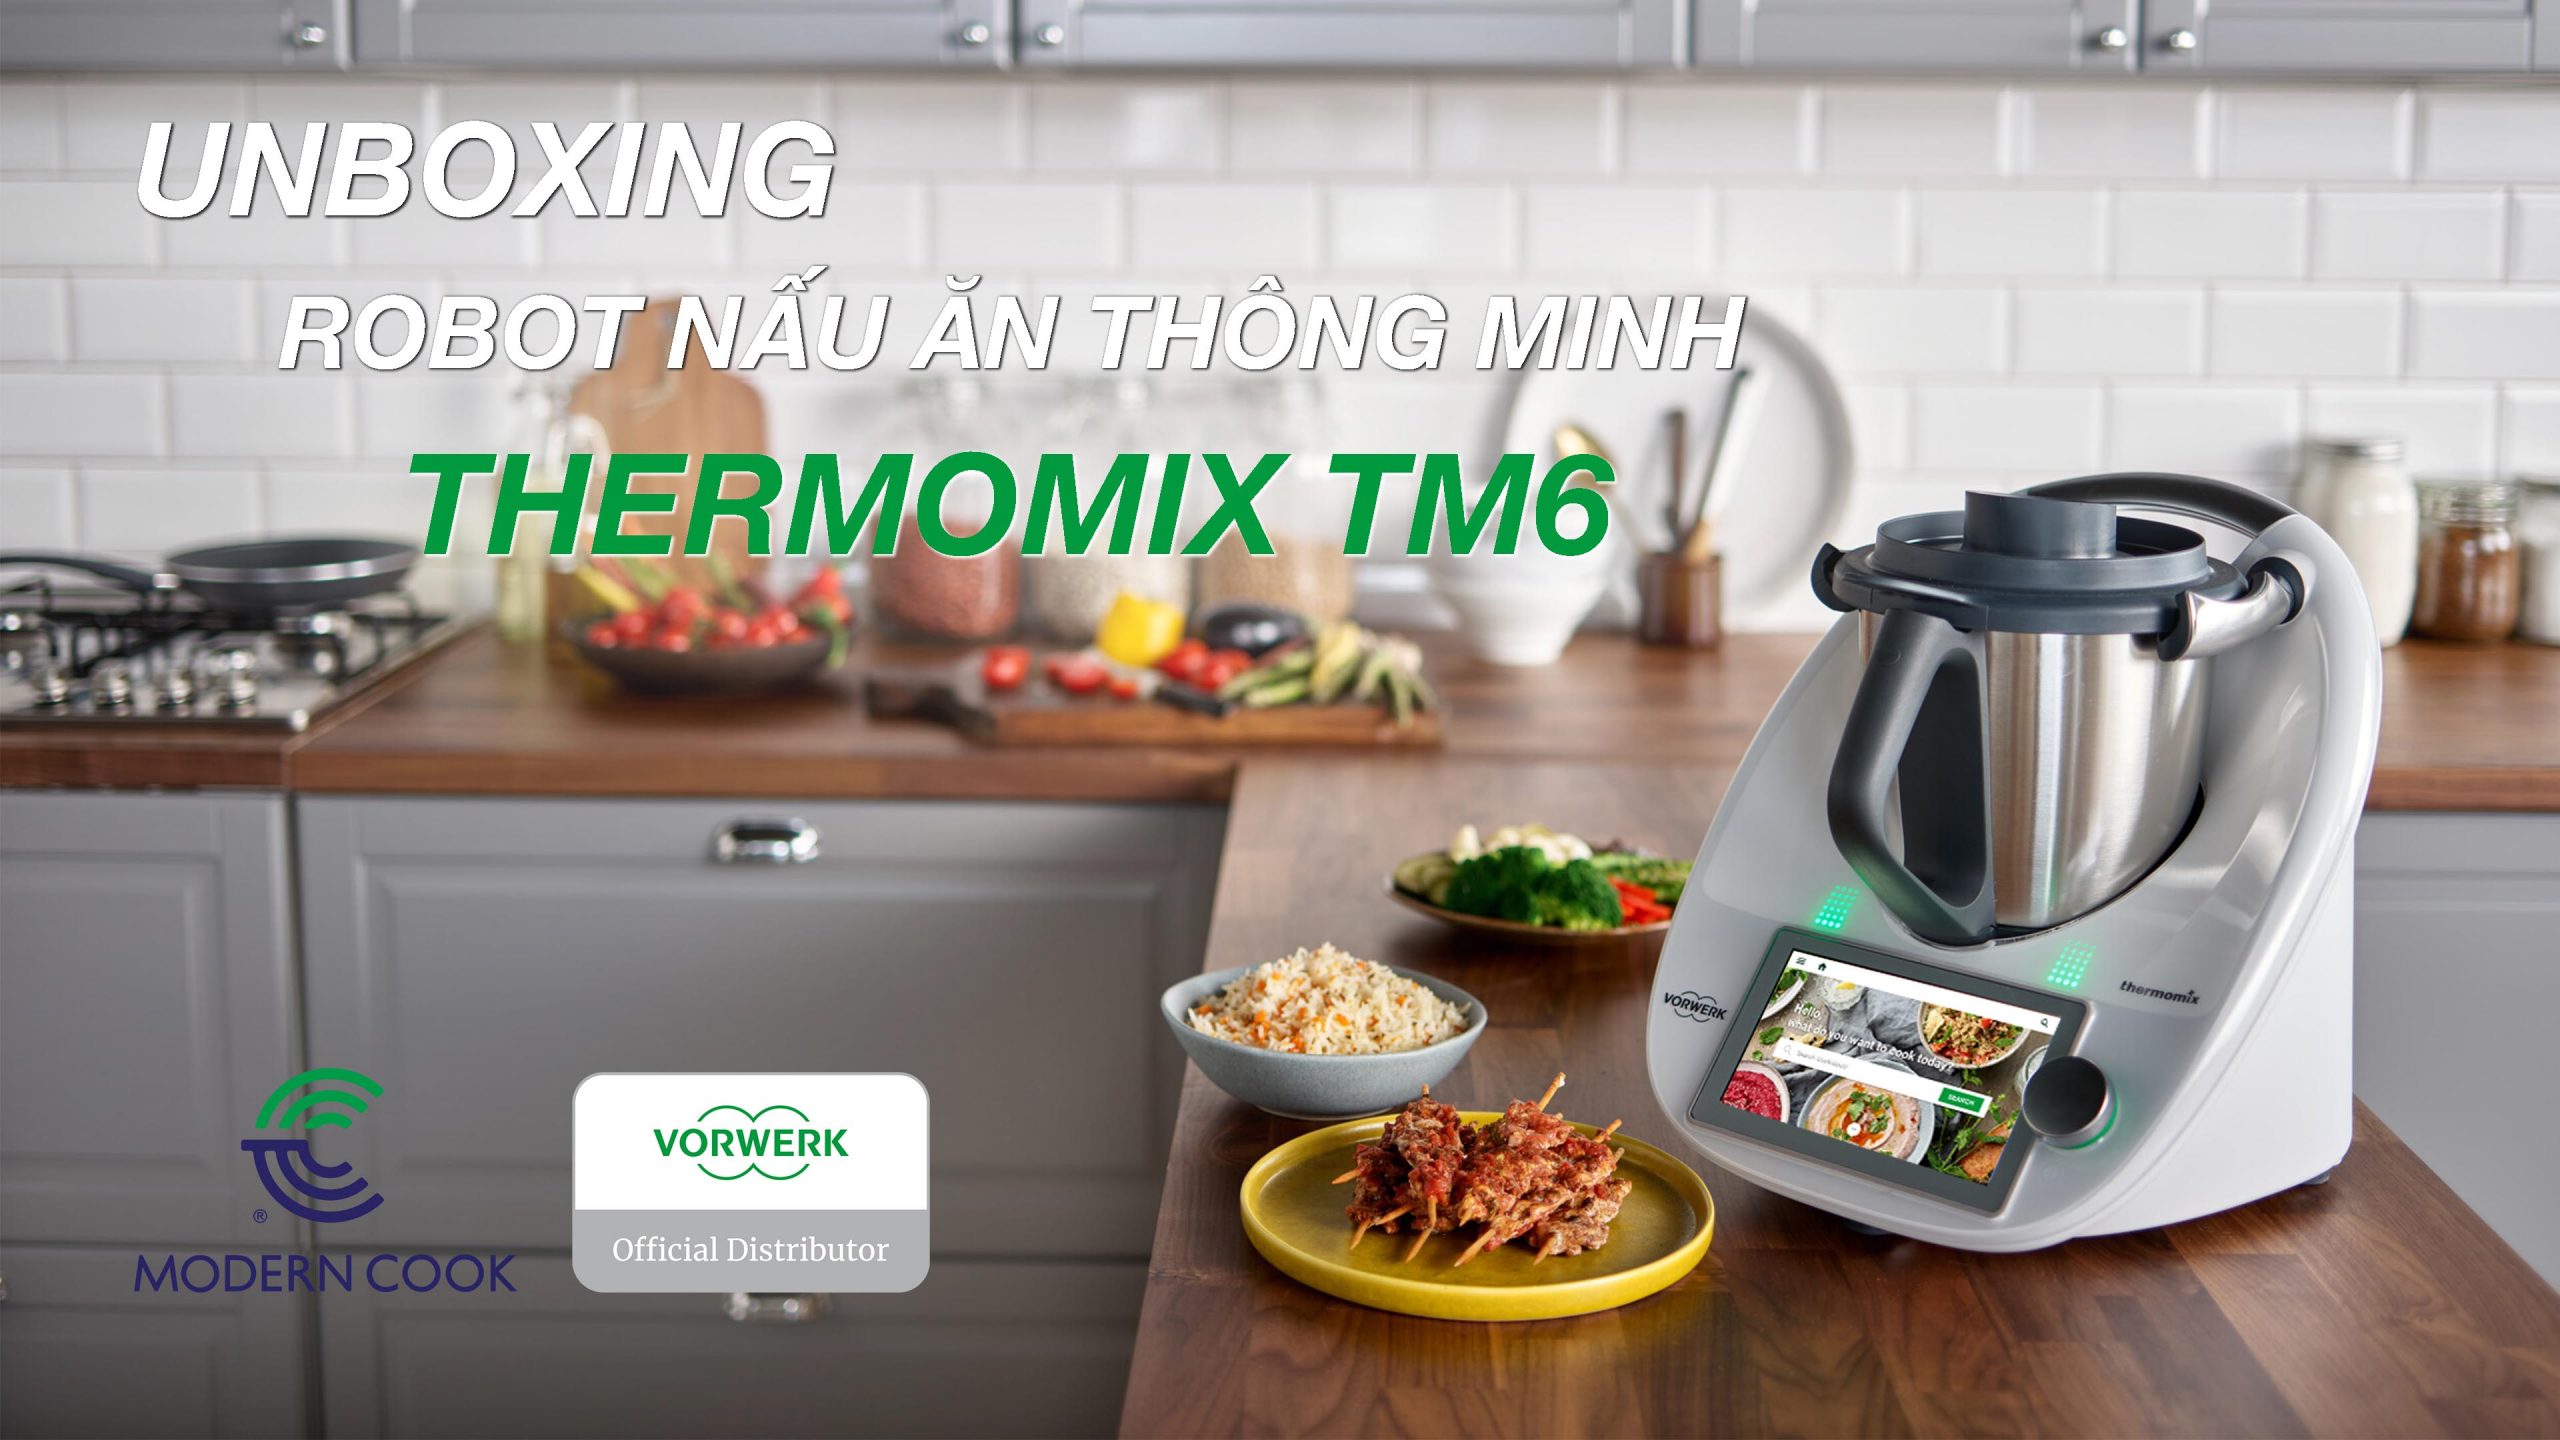 Robot nấu ăn Thermomix TM6: Siêu phẩm máy nấu ăn thông minh 4.0